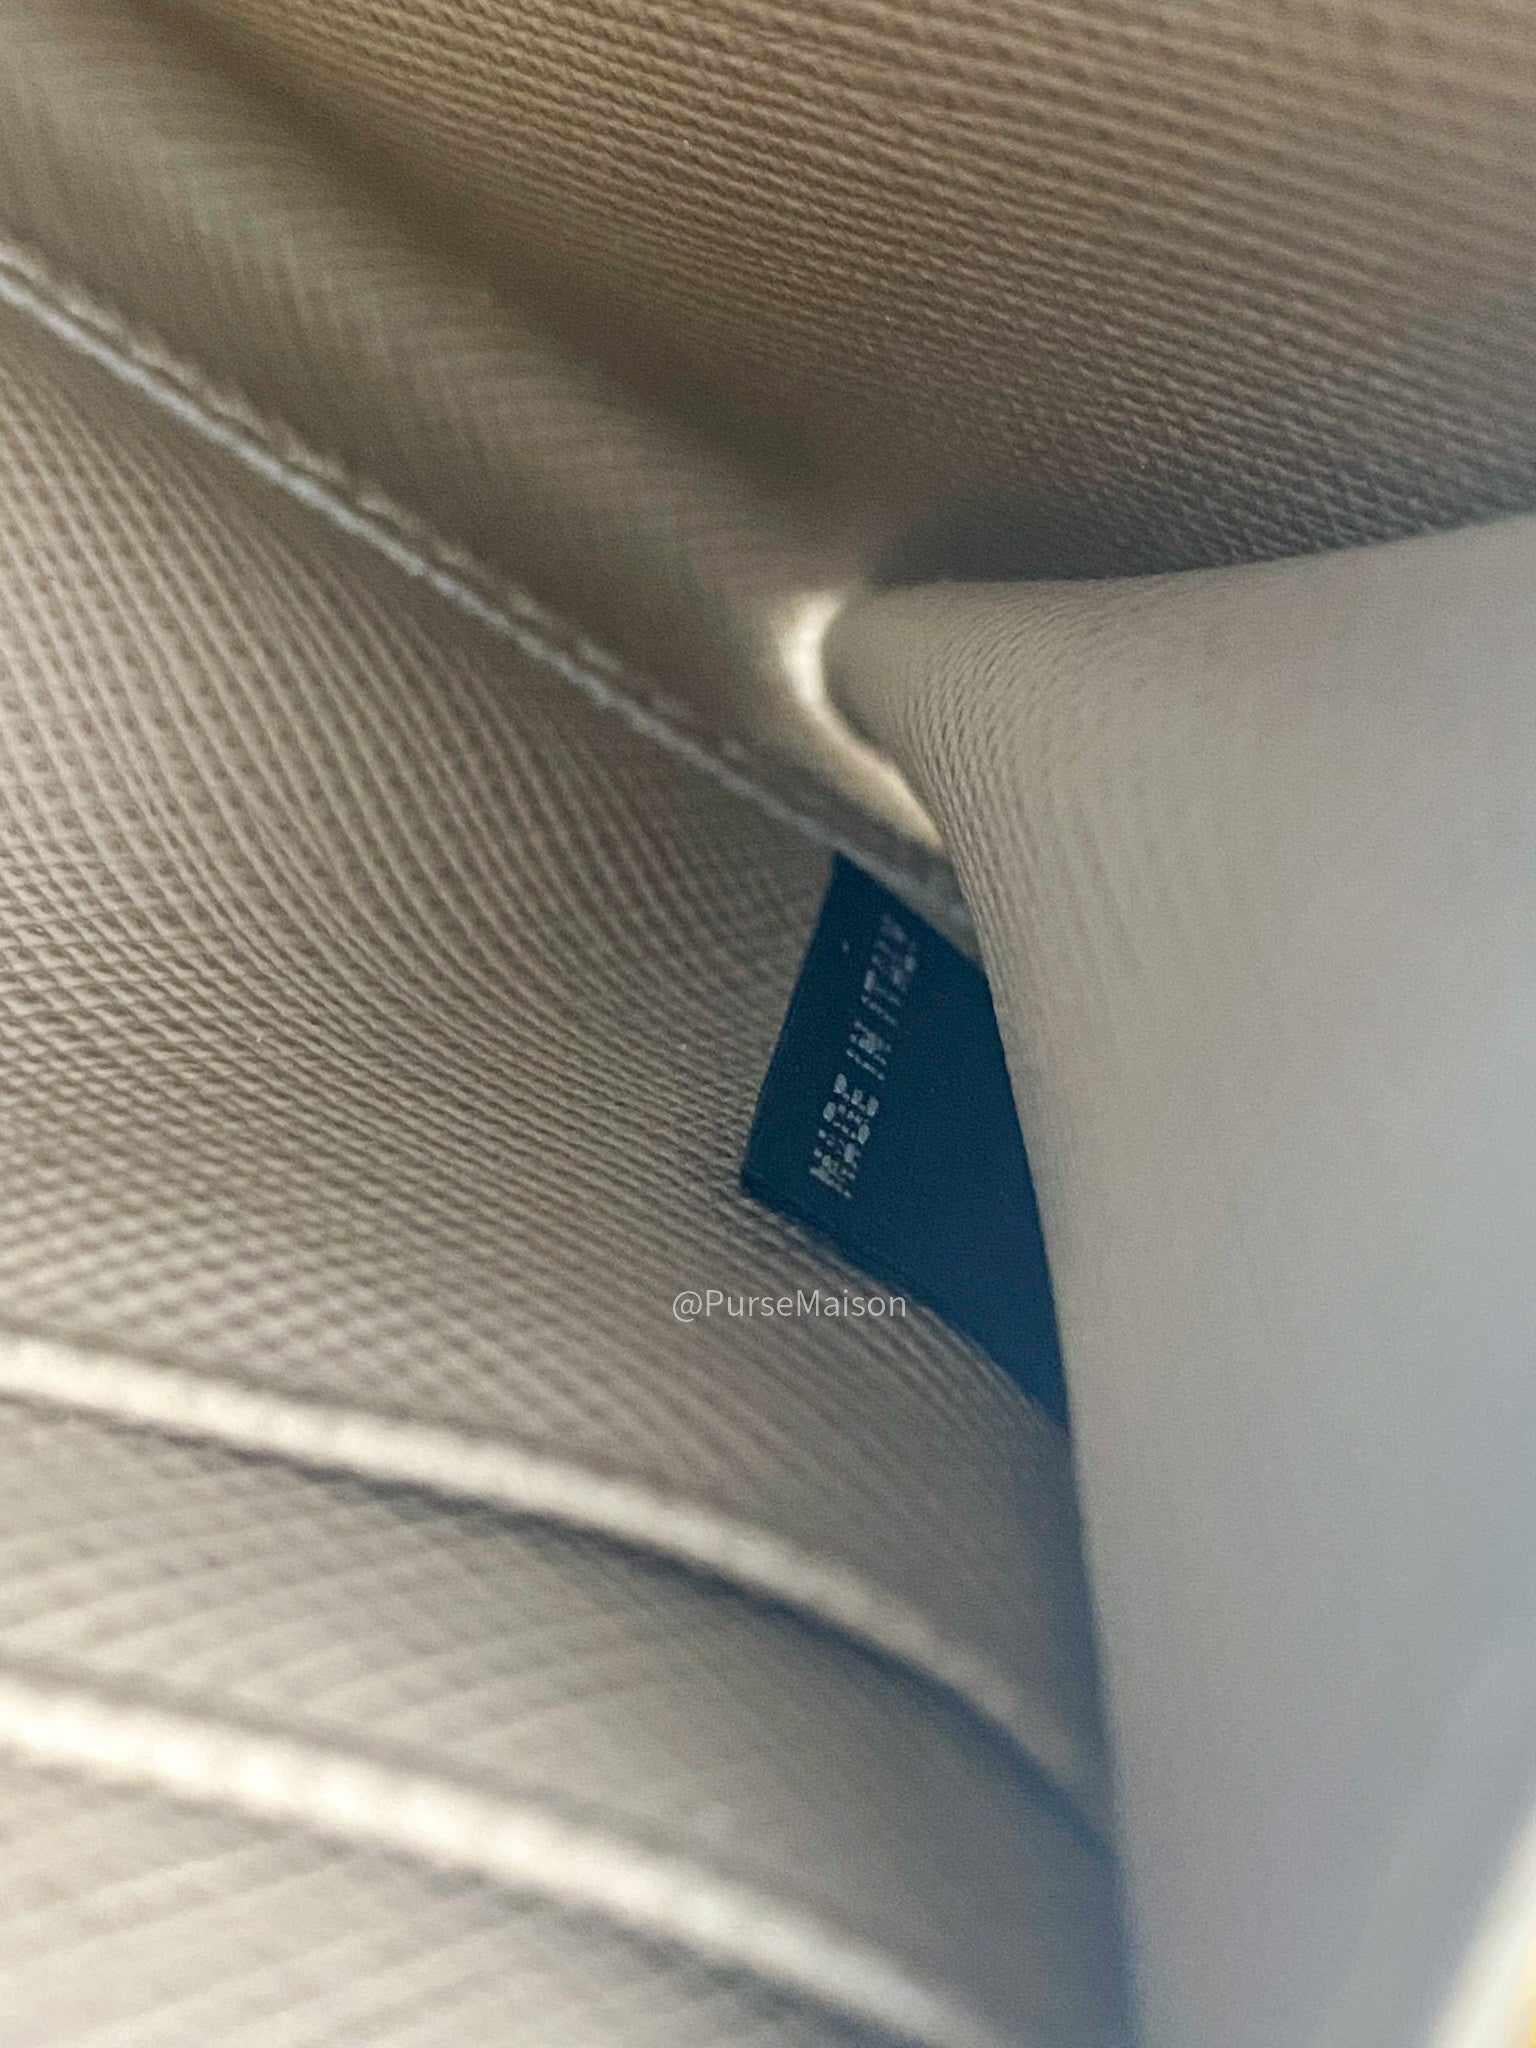 Prada 1M1348 Long Zipped Wallet in Beige Saffiano Metal Leather